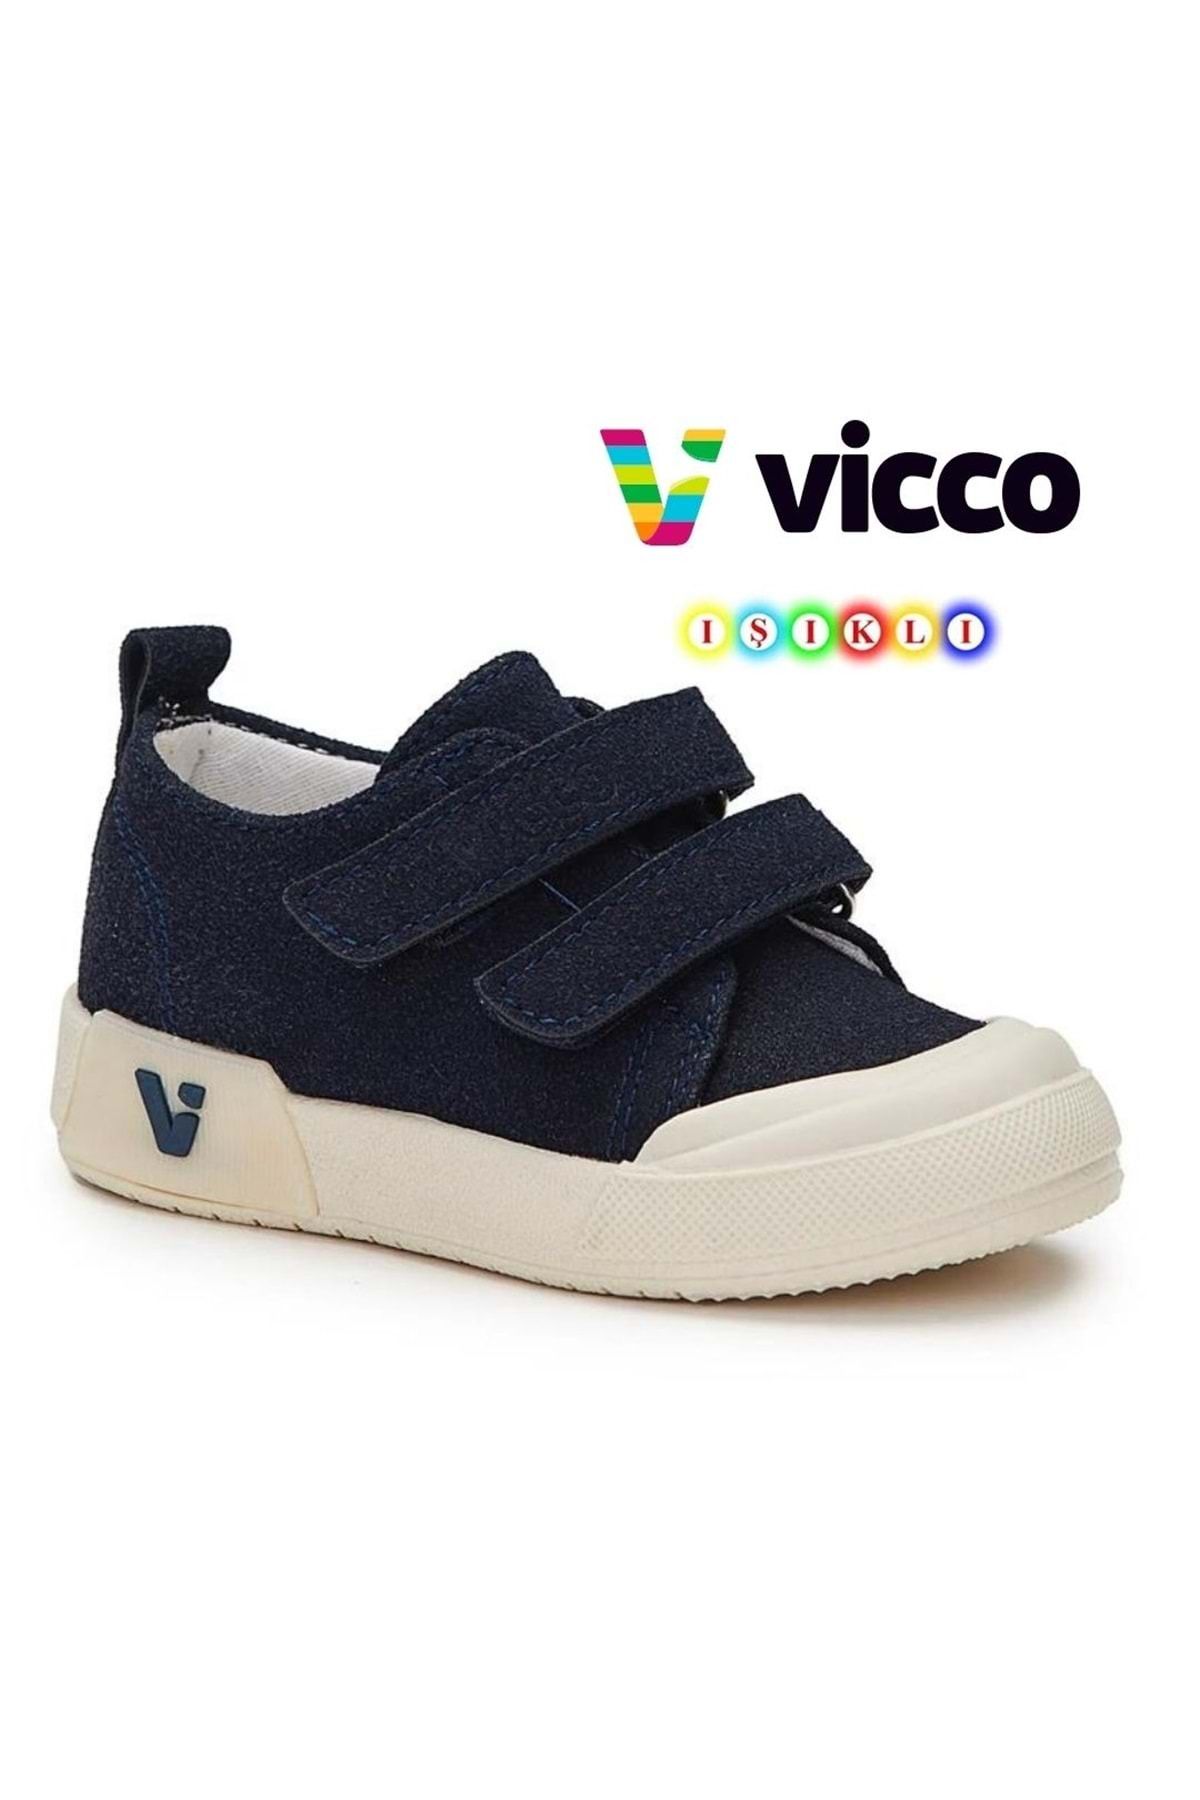 Vicco Mago Işıklı Keten Ortopedik Çocuk Spor Ayakkabı Lacivert